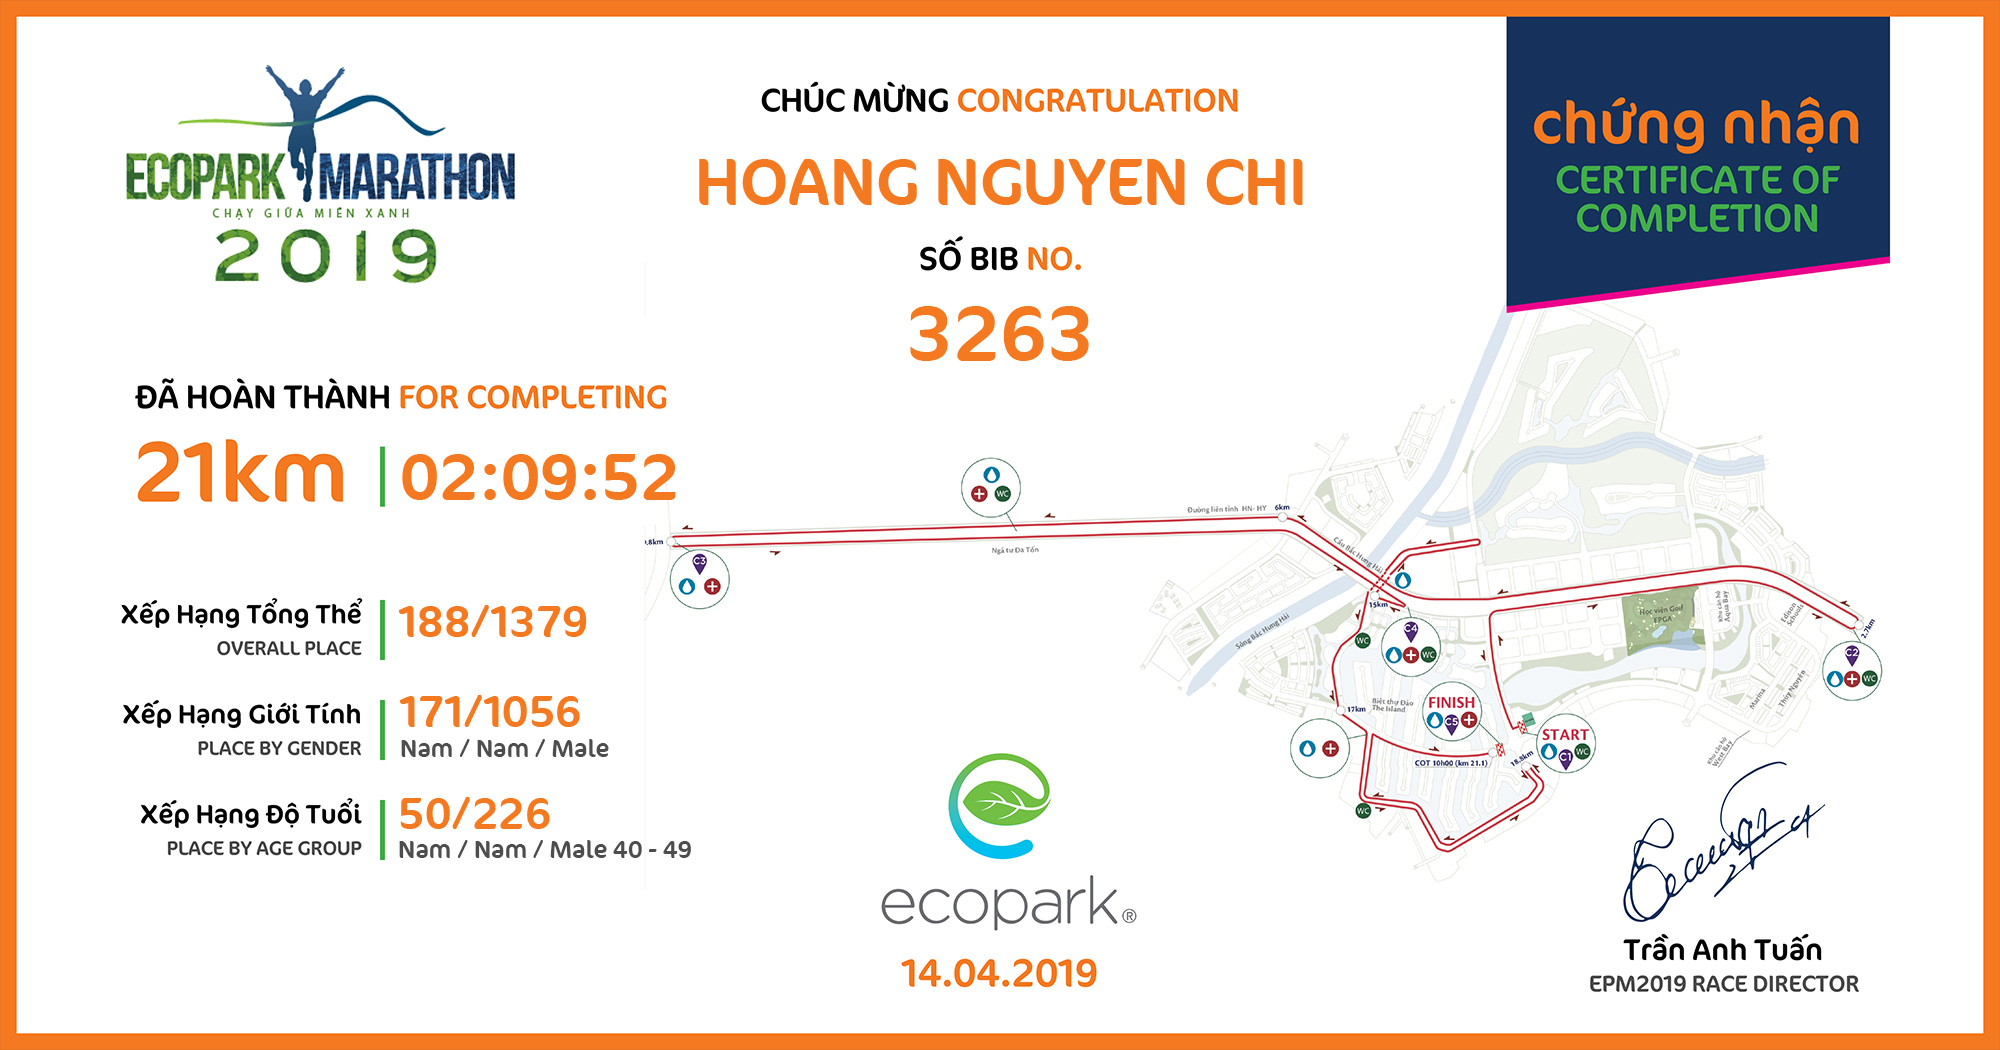 3263 - Hoang Nguyen Chi